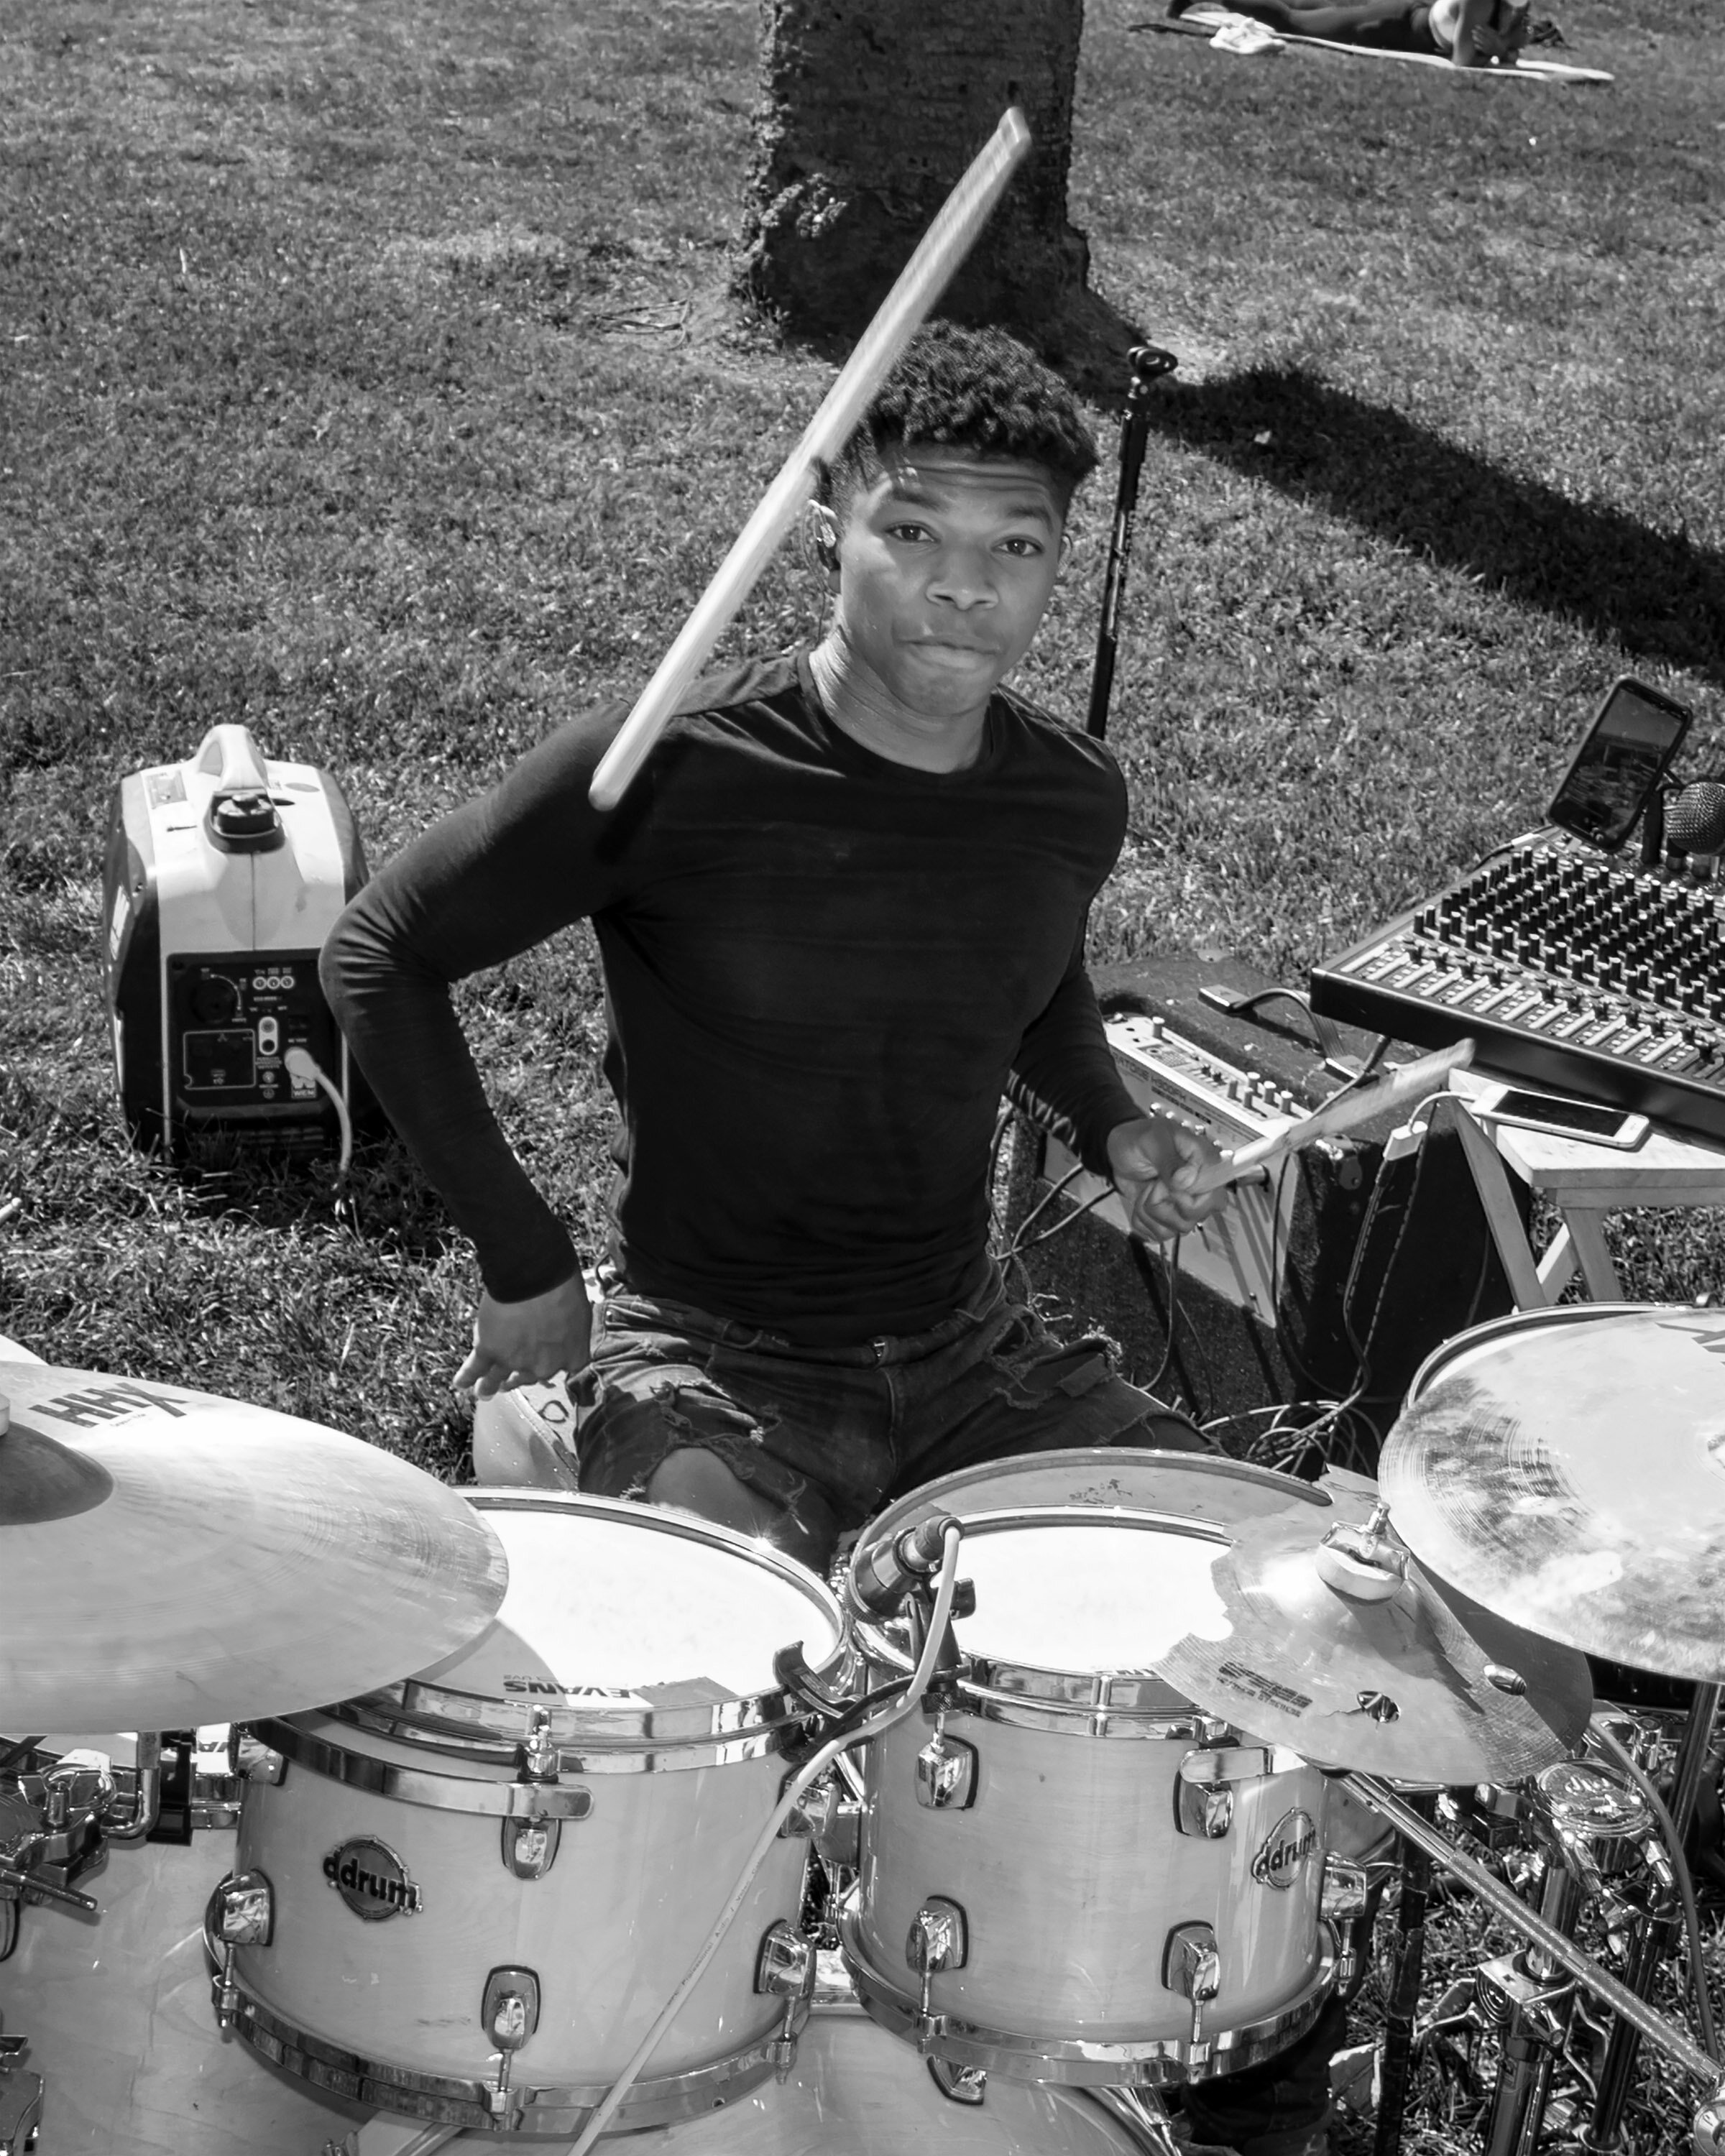 Aaron the drummer